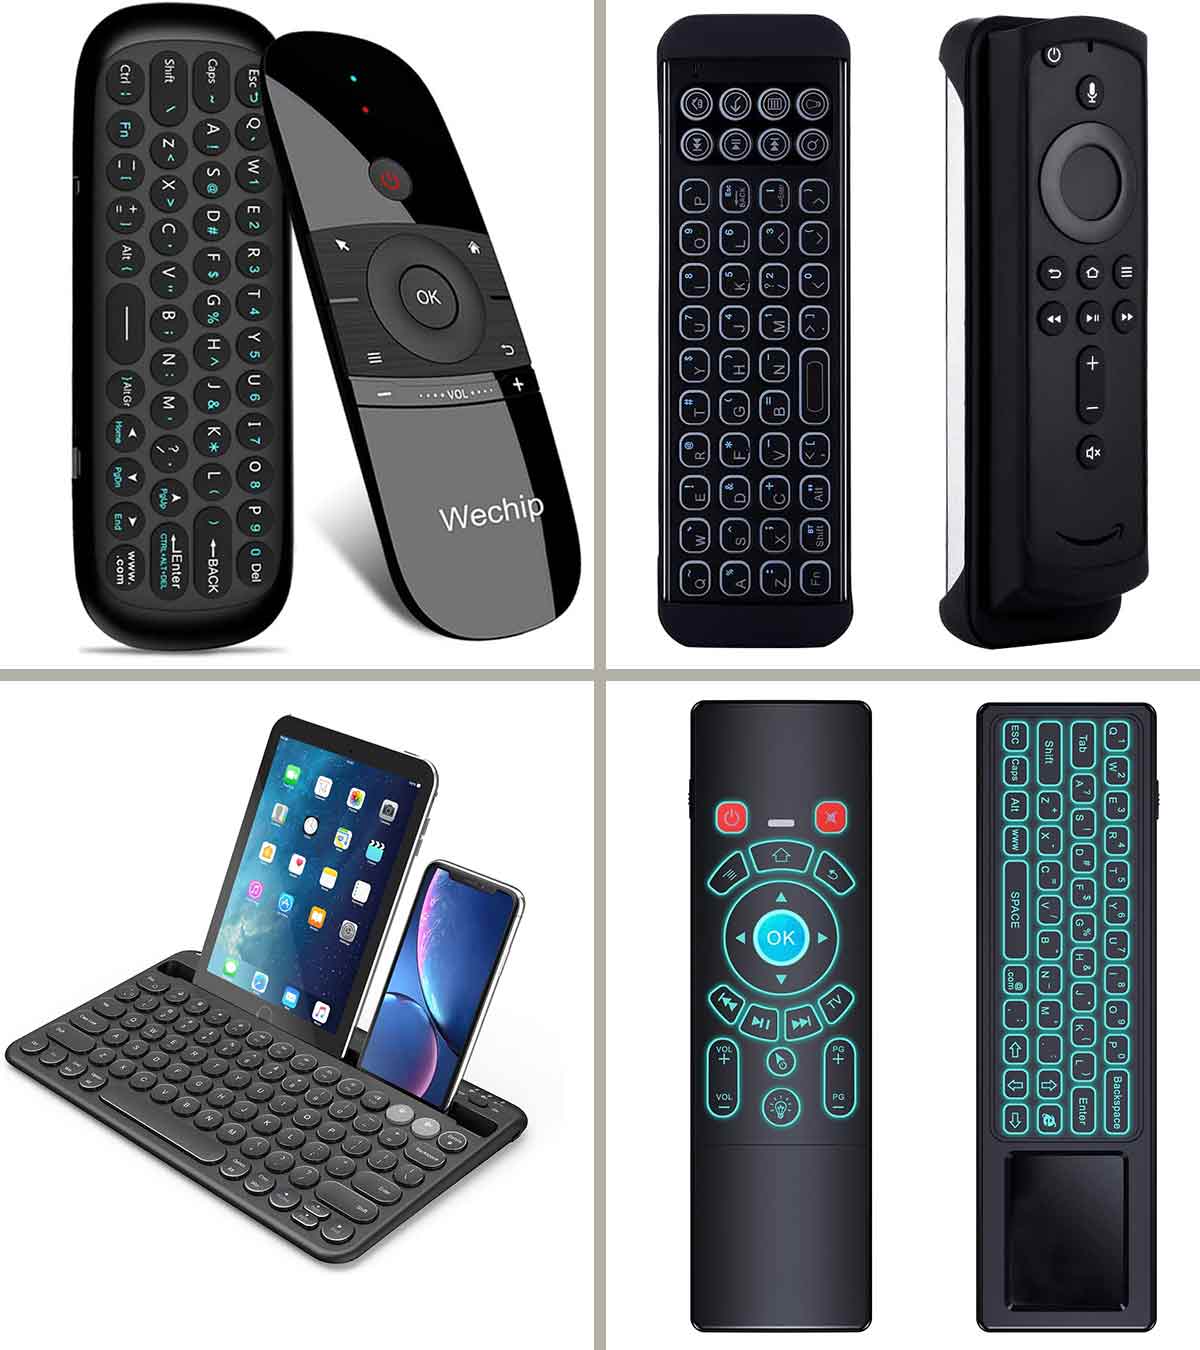 https://www.momjunction.com/wp-content/uploads/2021/02/13-Best-Wireless-Keyboards-For-Smart-TV-In-2021.jpg